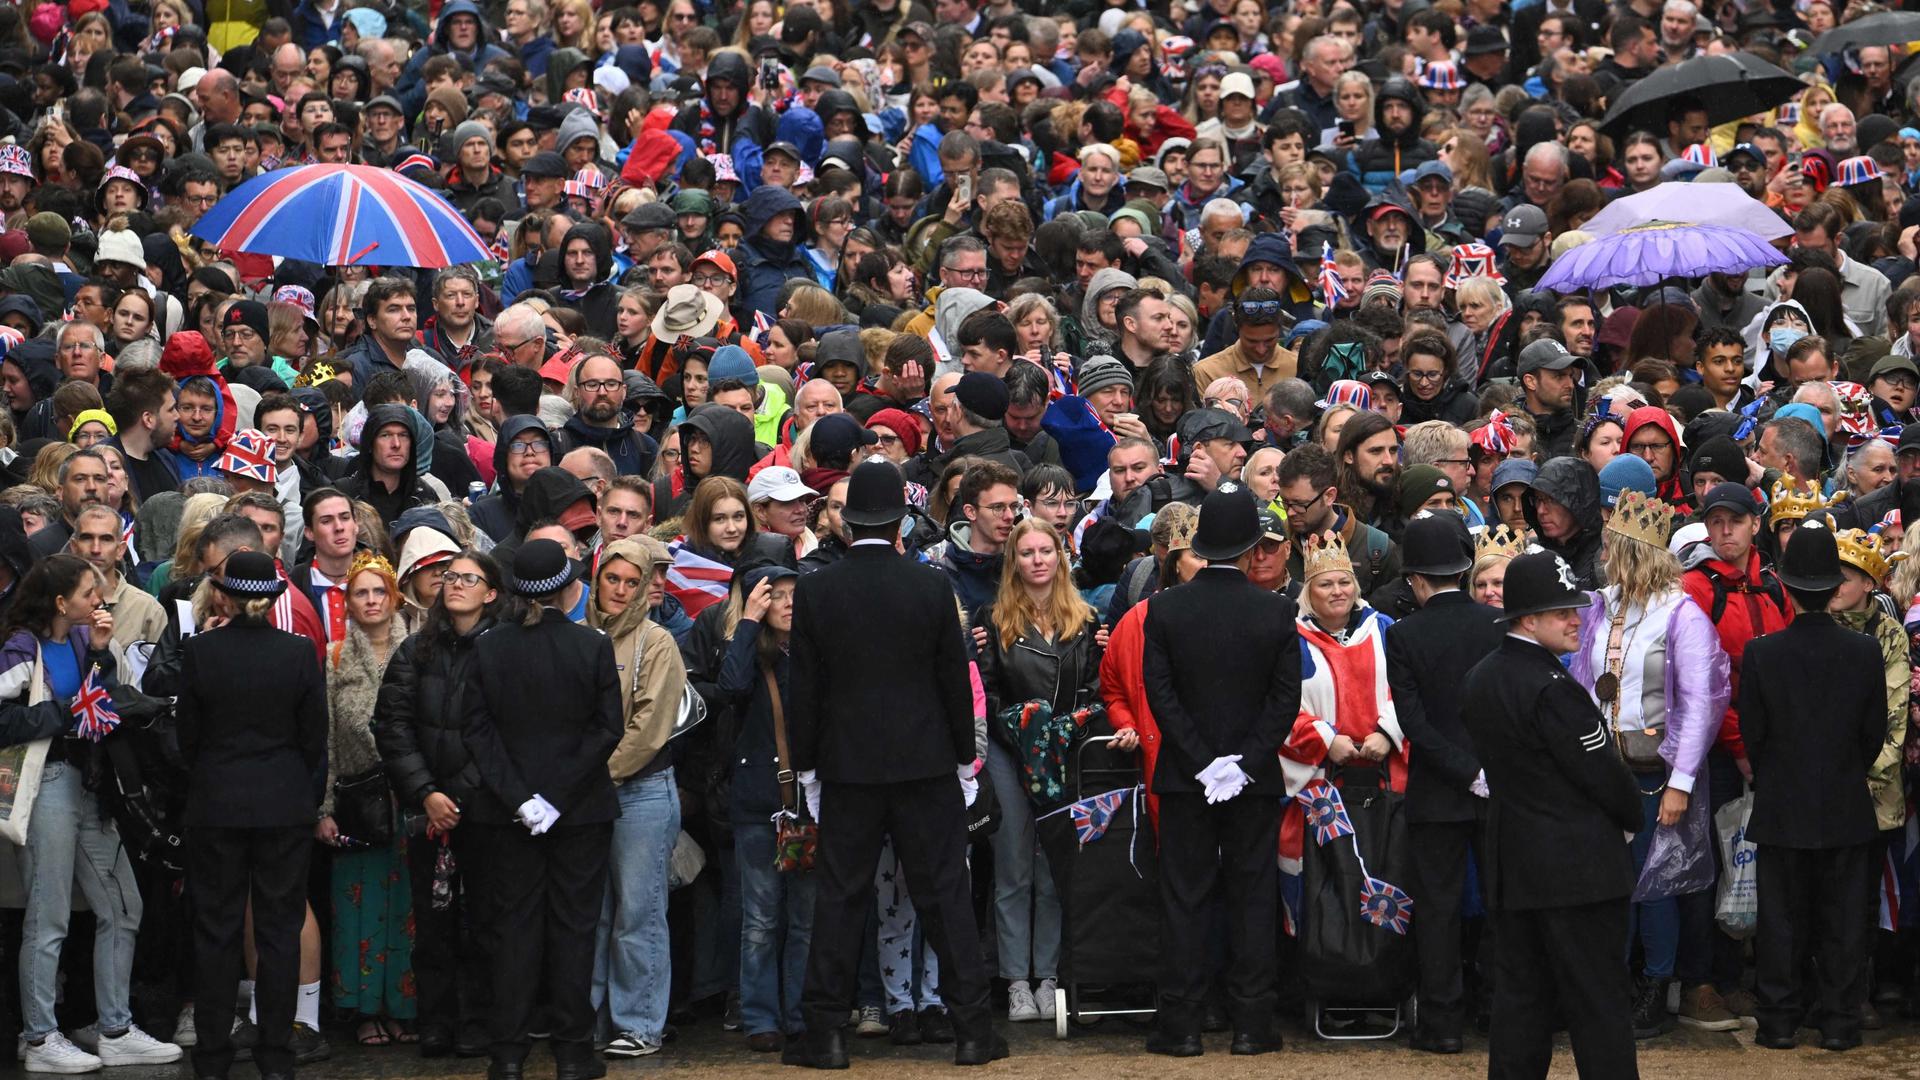 Milhares de populares estiveram presentes em frente ao palácio de Buckingham para ver os reis na varanda.